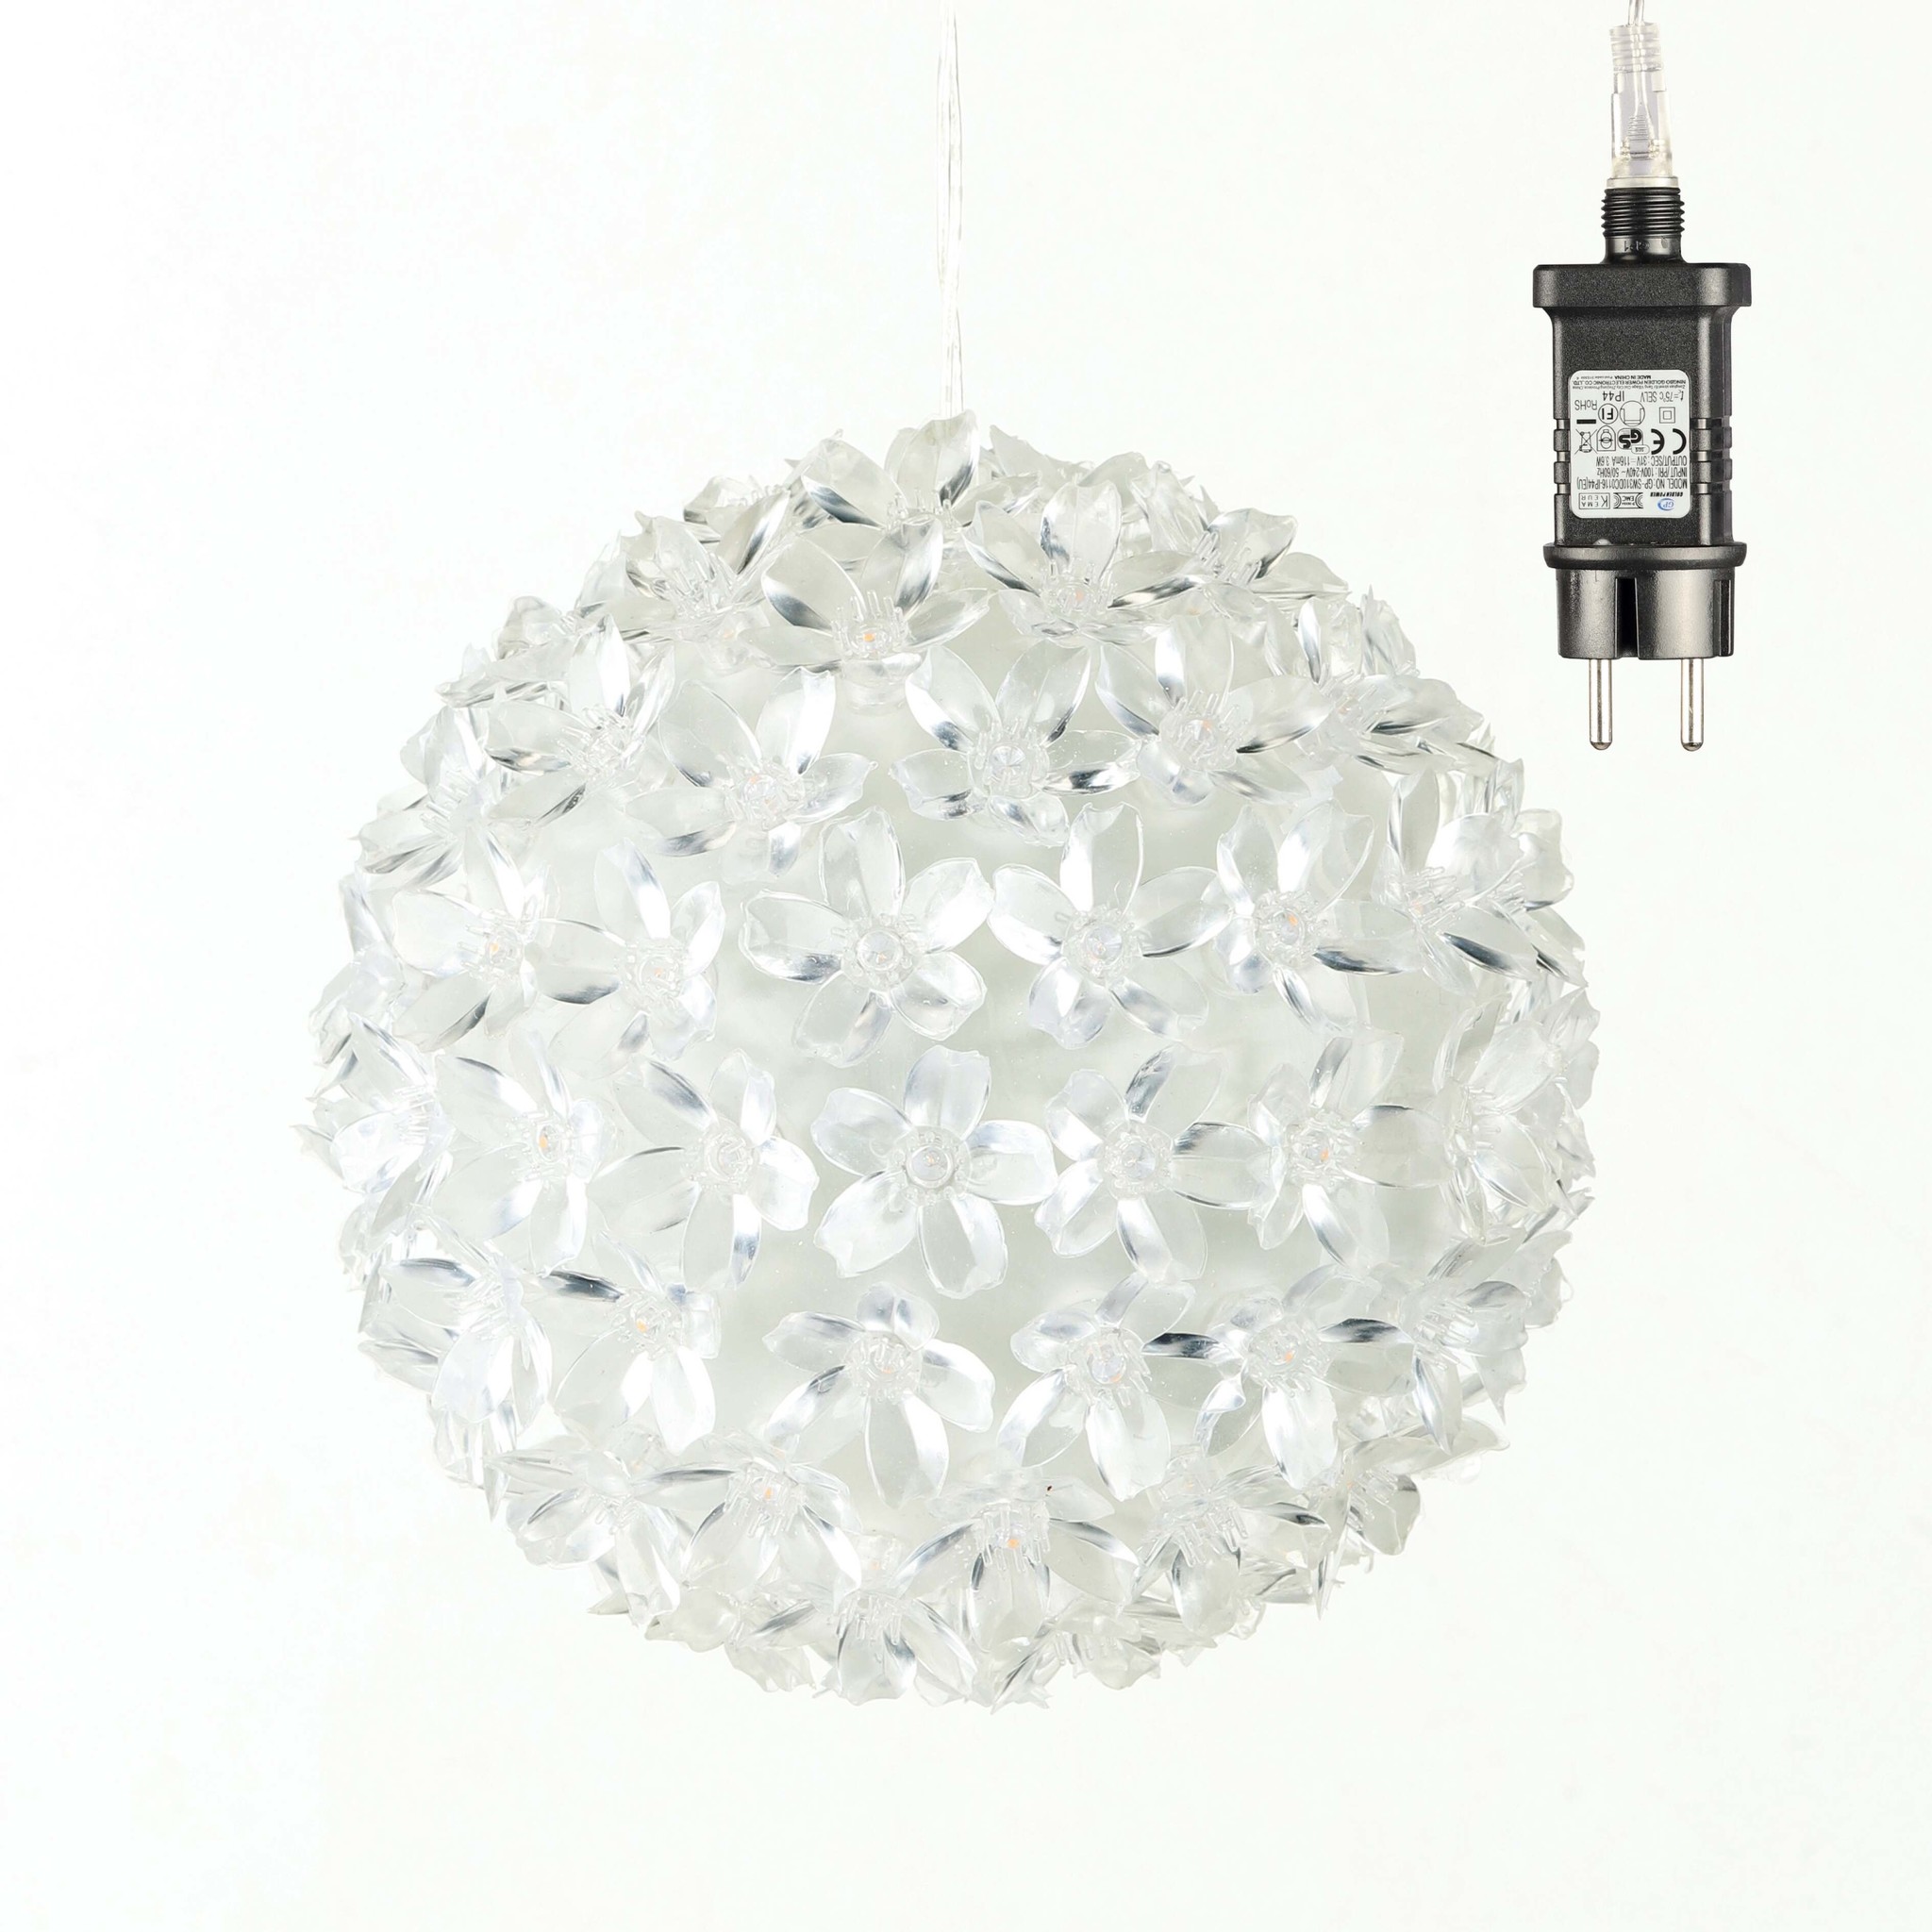 HI 75007 Lichterkugel 15cm mit 100 LEDs warmweiss - Versandhandel Erwin  Lücken